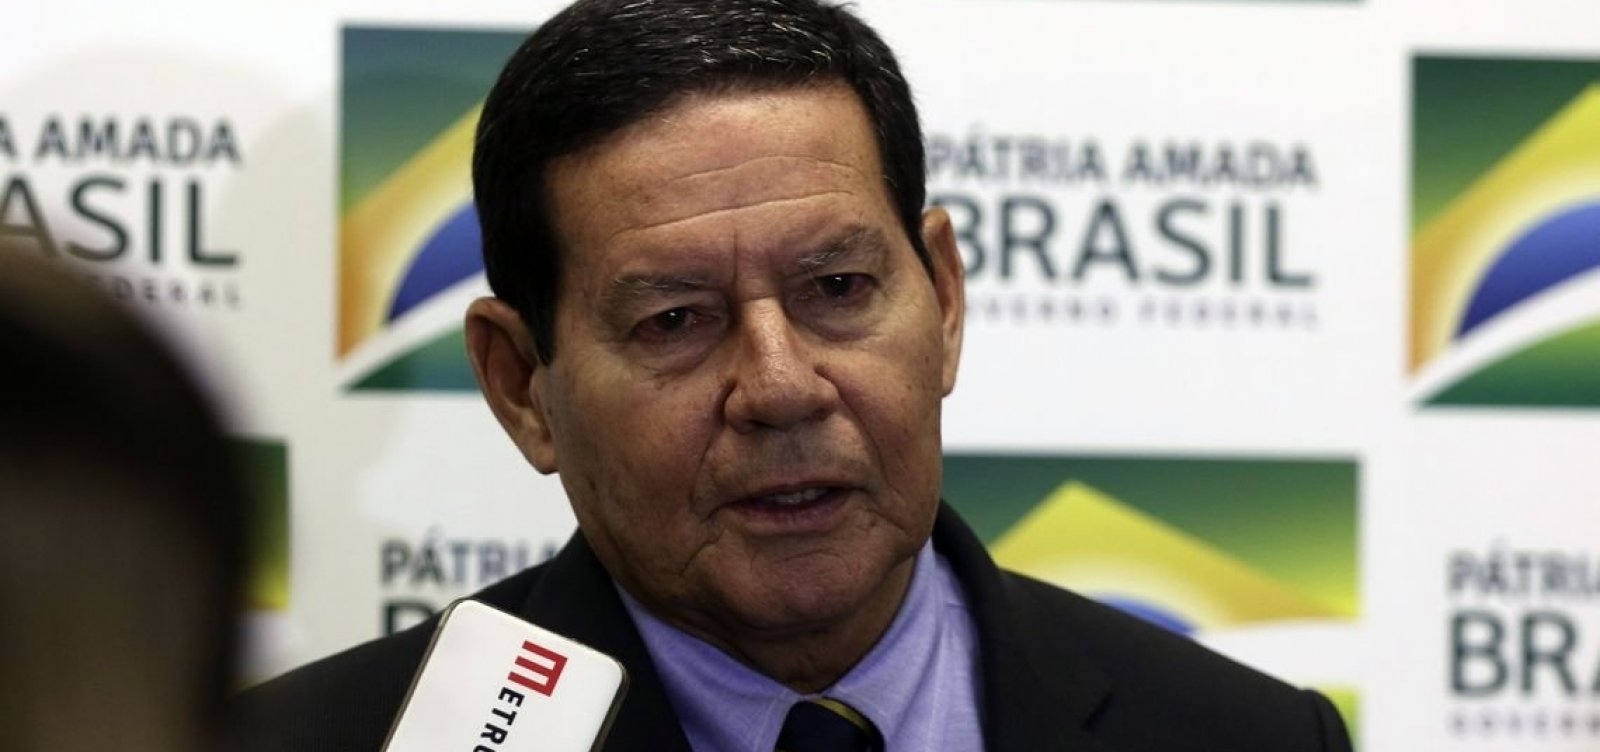 Mourão reafirma compromisso com Amazônia em reunião com empresários alemães